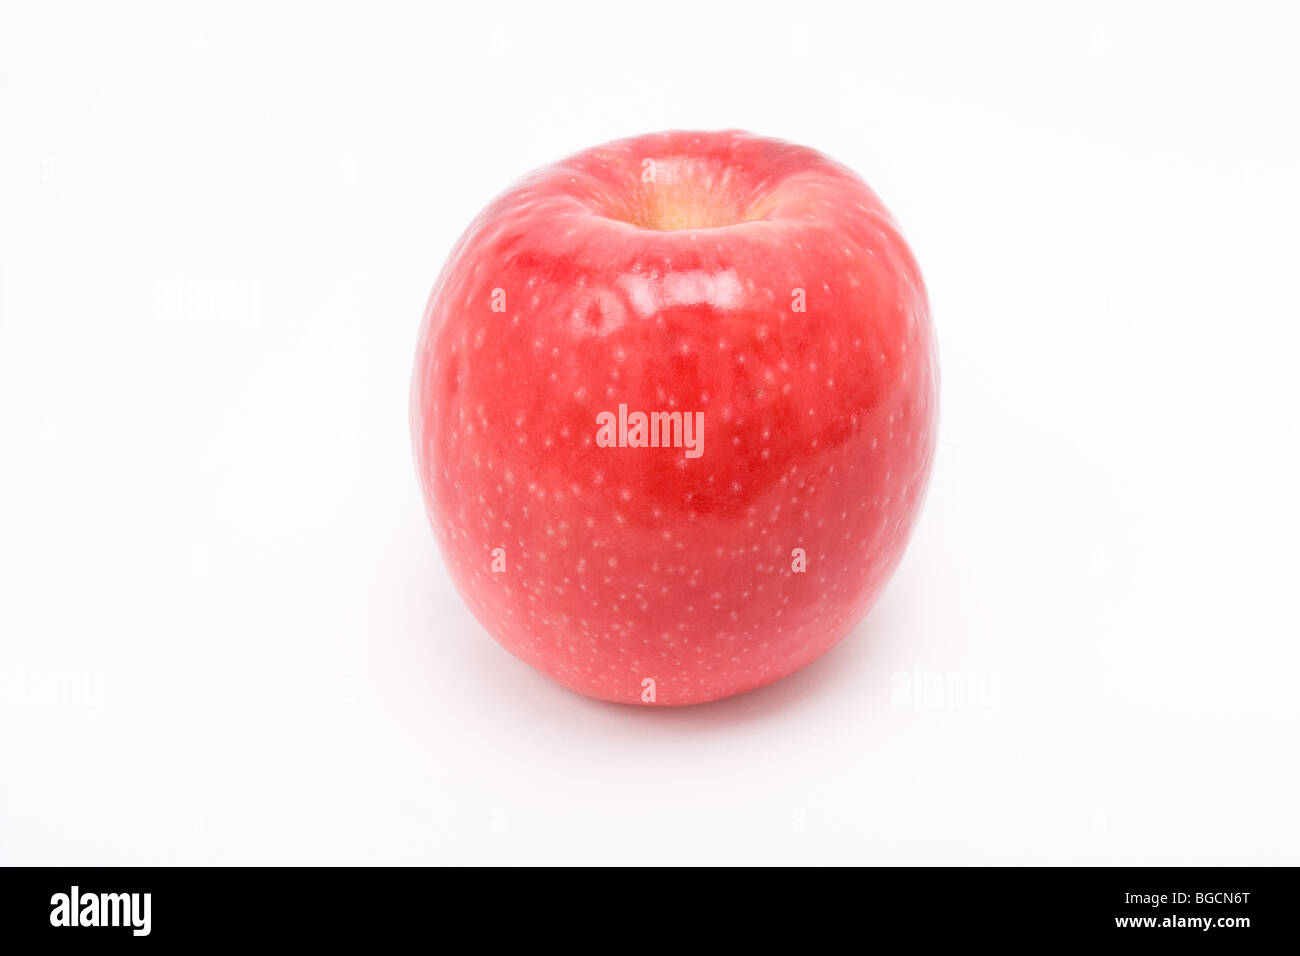 Pink Lady red apple isolata contro uno sfondo bianco Foto Stock